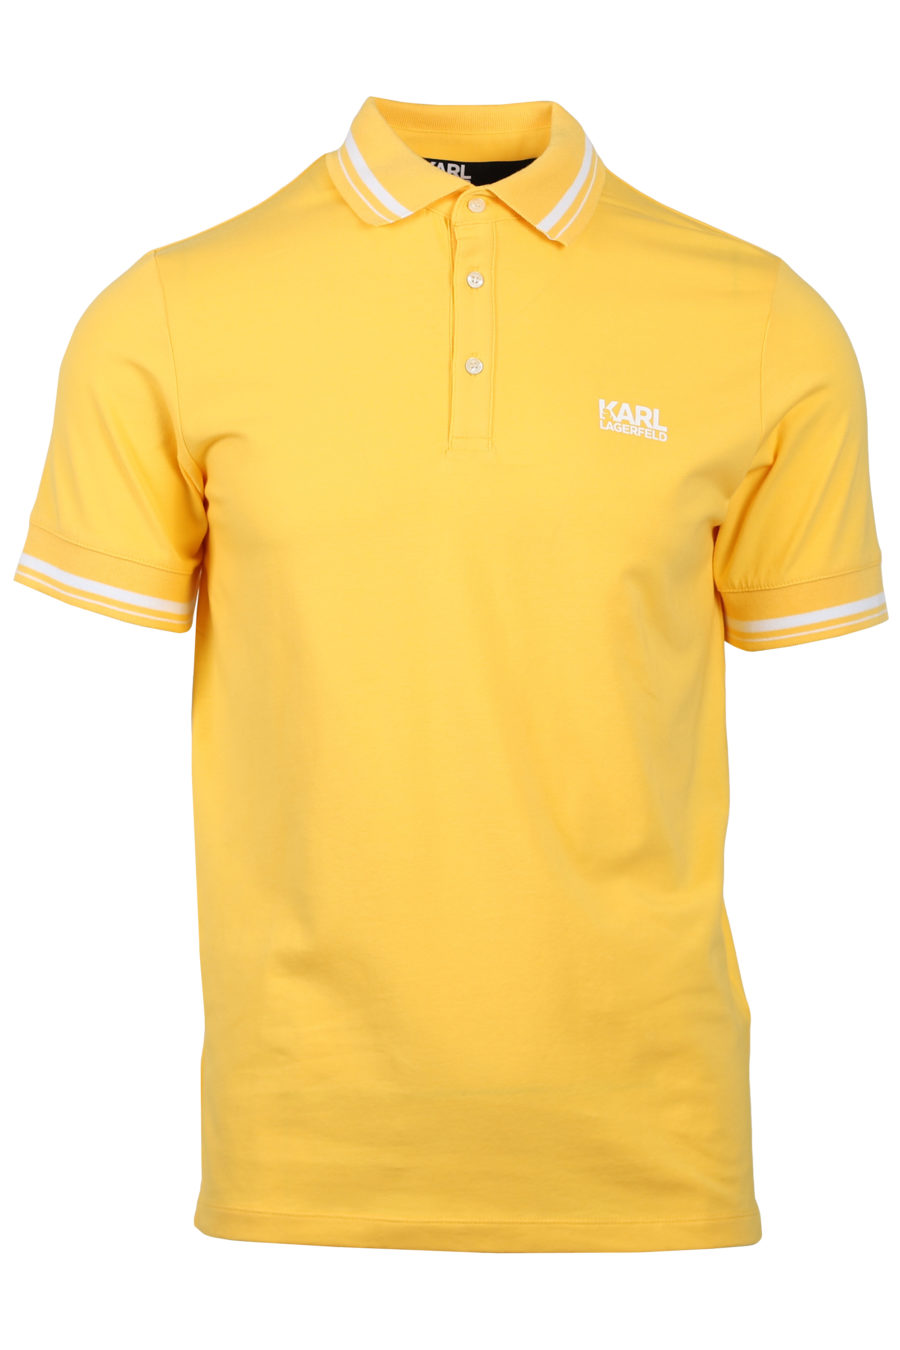 Polo shirt yellow logo white - IMG 2027